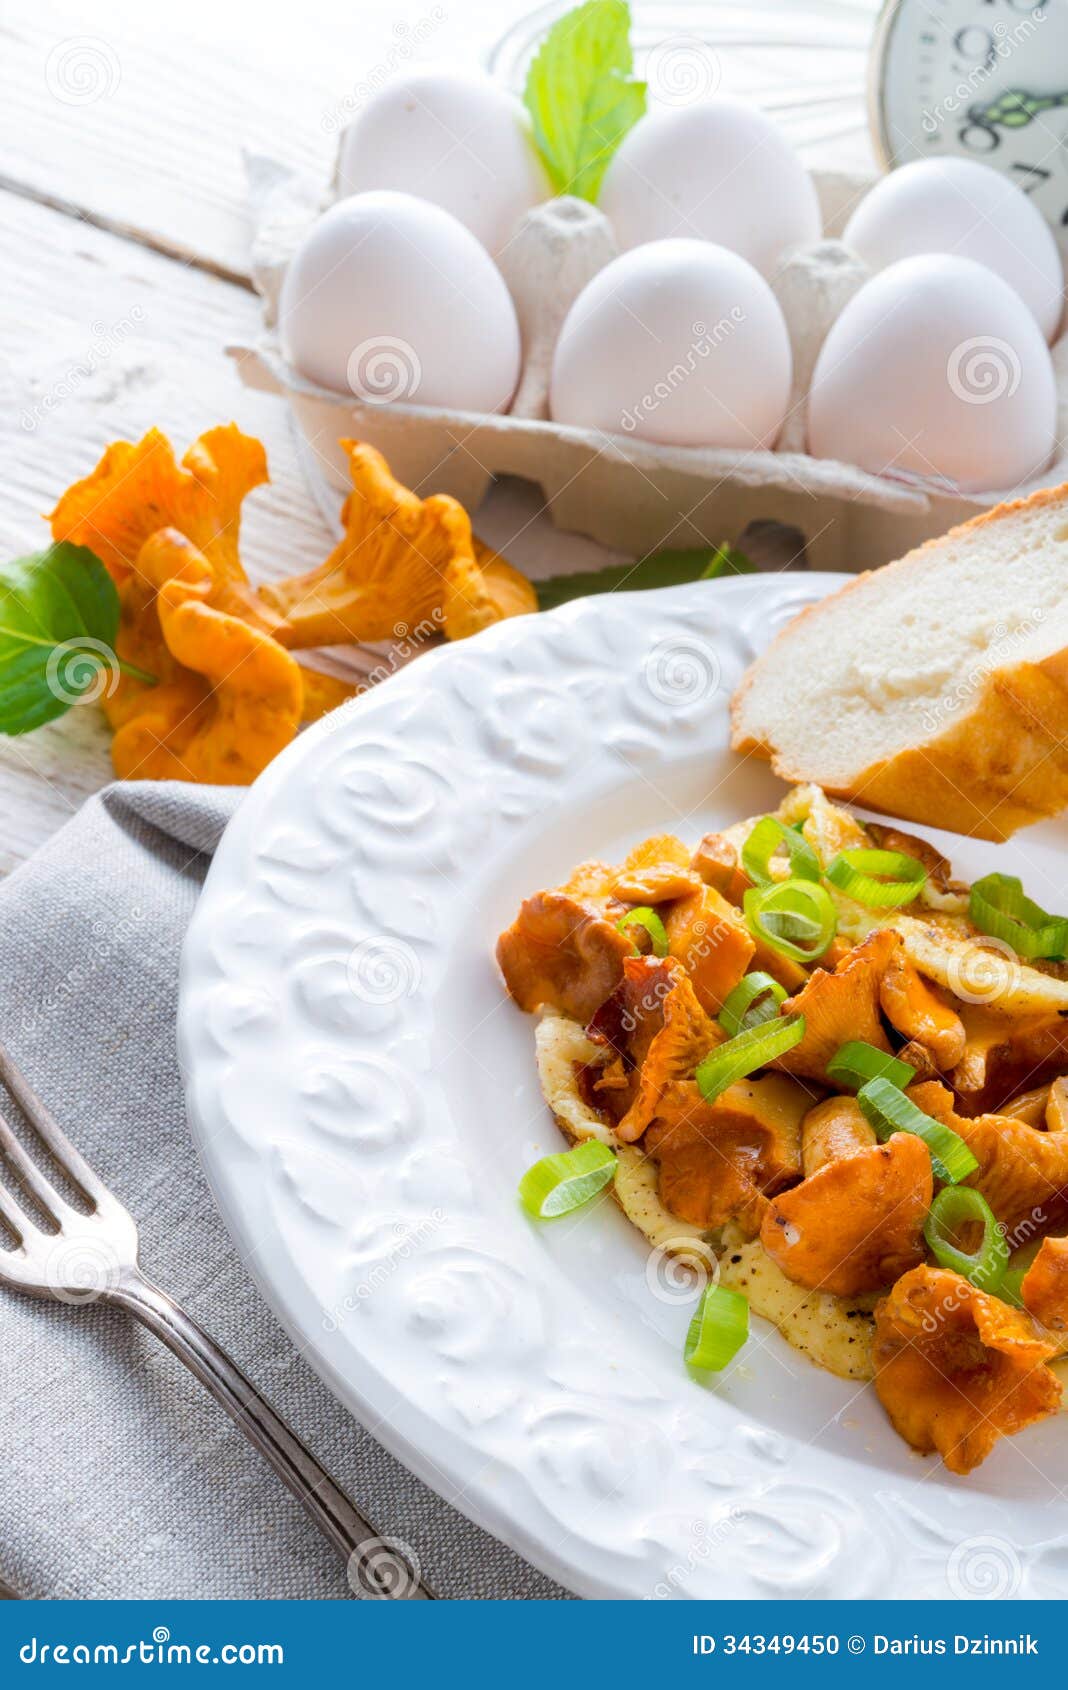 【简单做美食】蘑菇煎蛋 香菇煎豆腐 洋葱肉丝炒红萝卜（原创） - 歐洲希望之聲